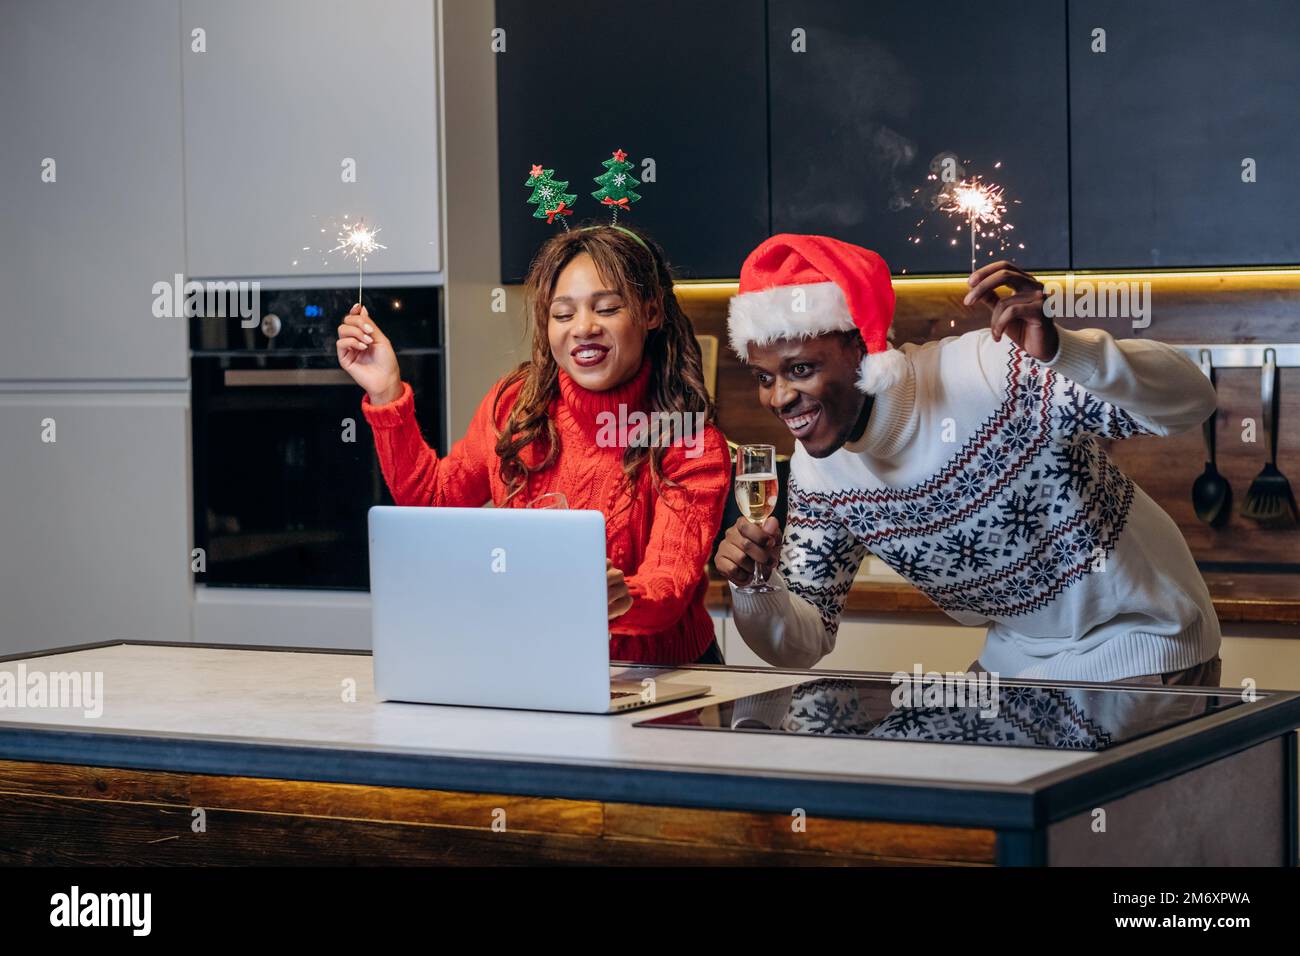 Ein glückliches junges Paar sieht sich festliche Shows mit dem Laptop an und feiert Weihnachten mit Glitzer und Champagner in der Küche Stockfoto